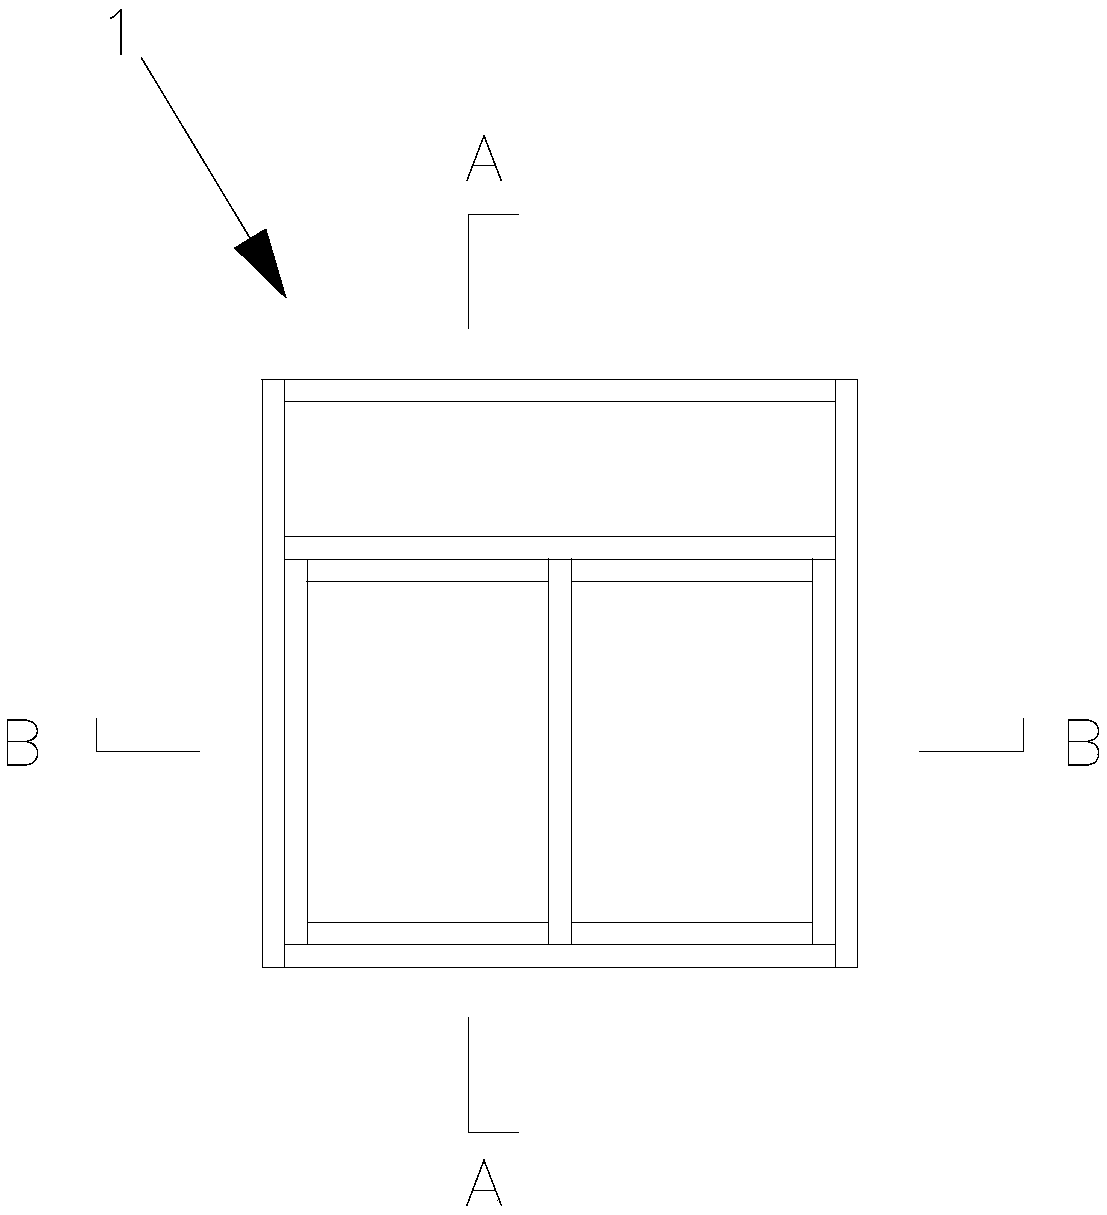 Window screening integrated door and window profile